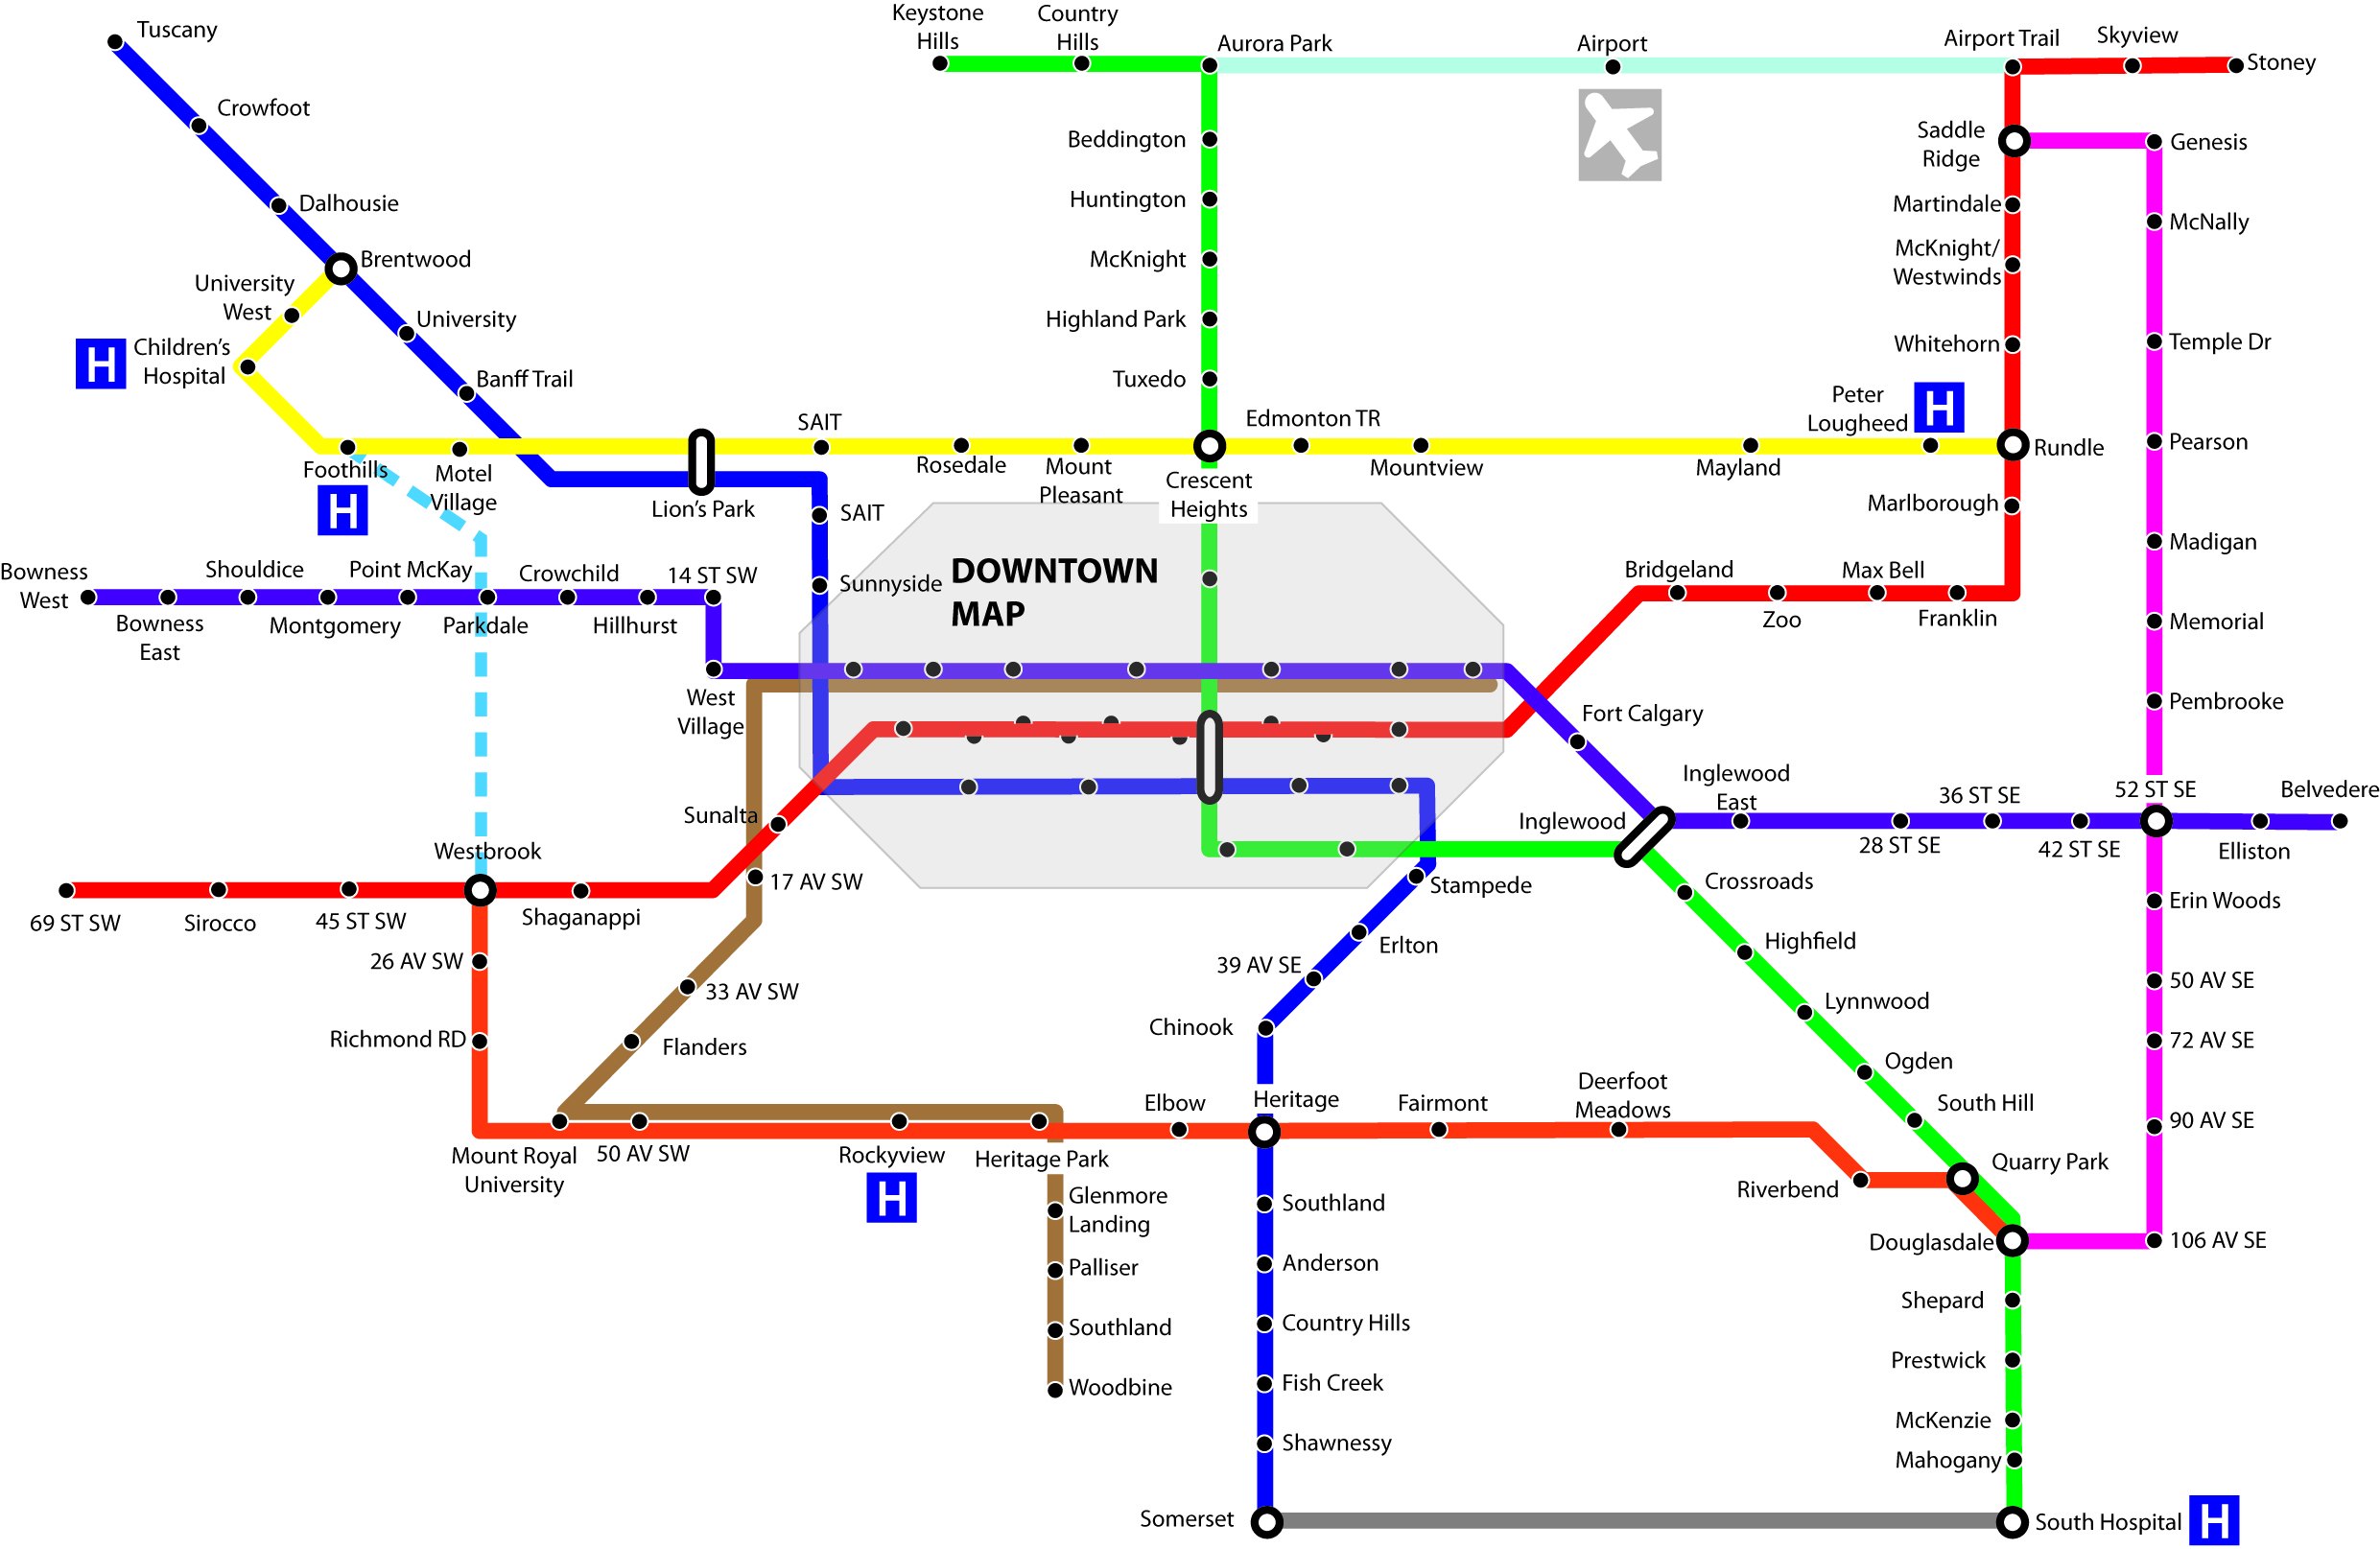 transit-network-2.jpg